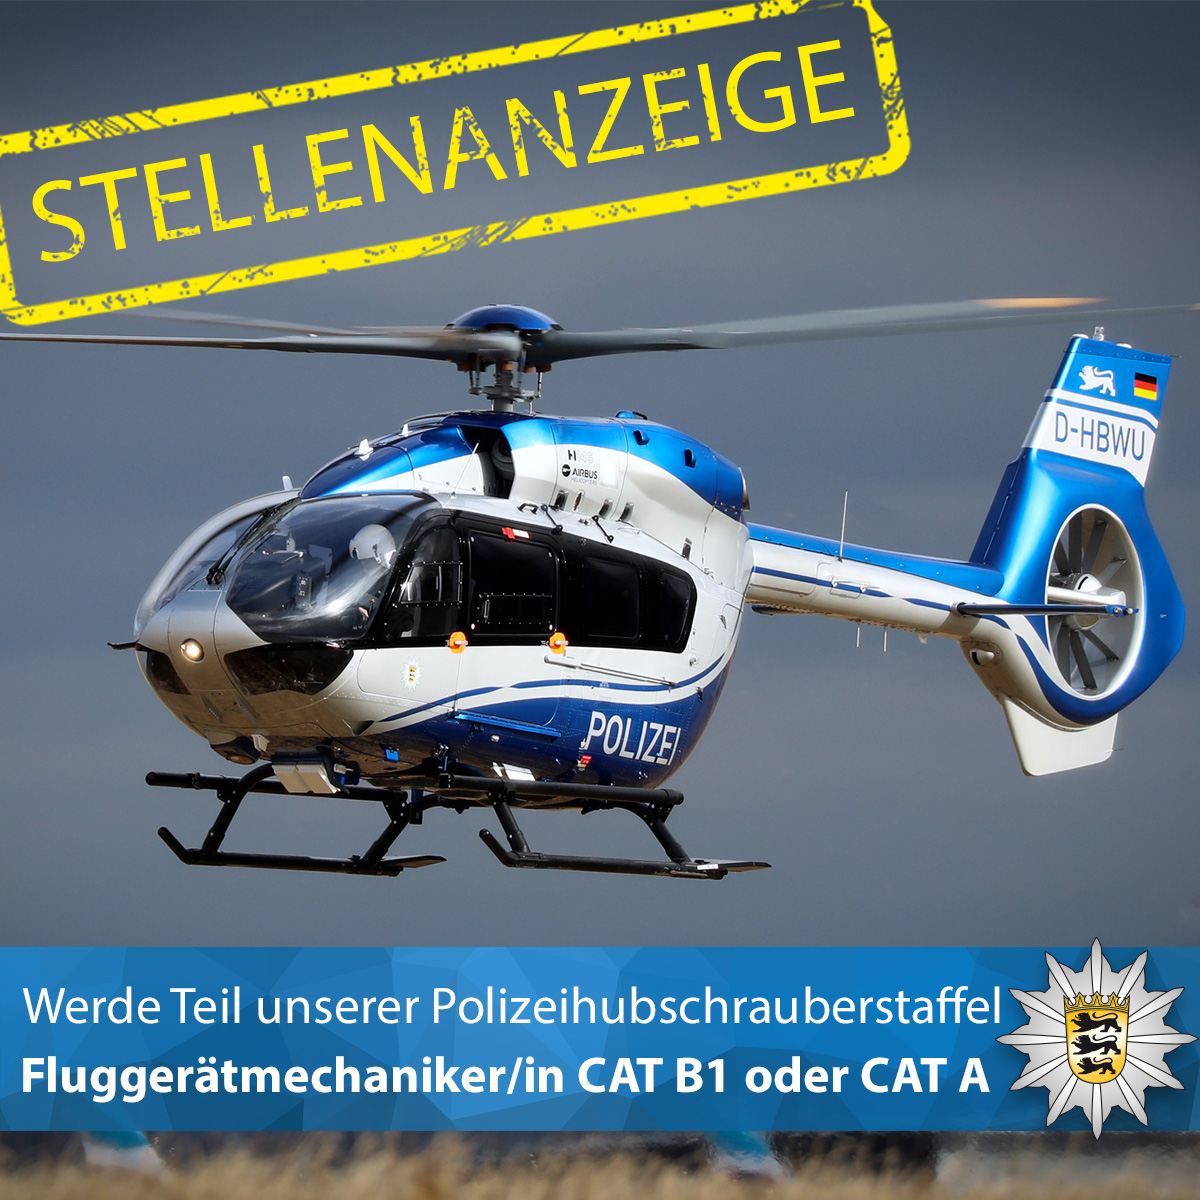 #Stellenanzeige Die Polizeihubschrauberstaffel Baden-Württemberg sucht ab dem 1. September einen/eine Fluggerätmechaniker/in CAT B1 oder CAT A (w/m/d).

Alle Infos ▶️ t1p.de/4qea9

Euer #LKABW #BereitfürSicherheit